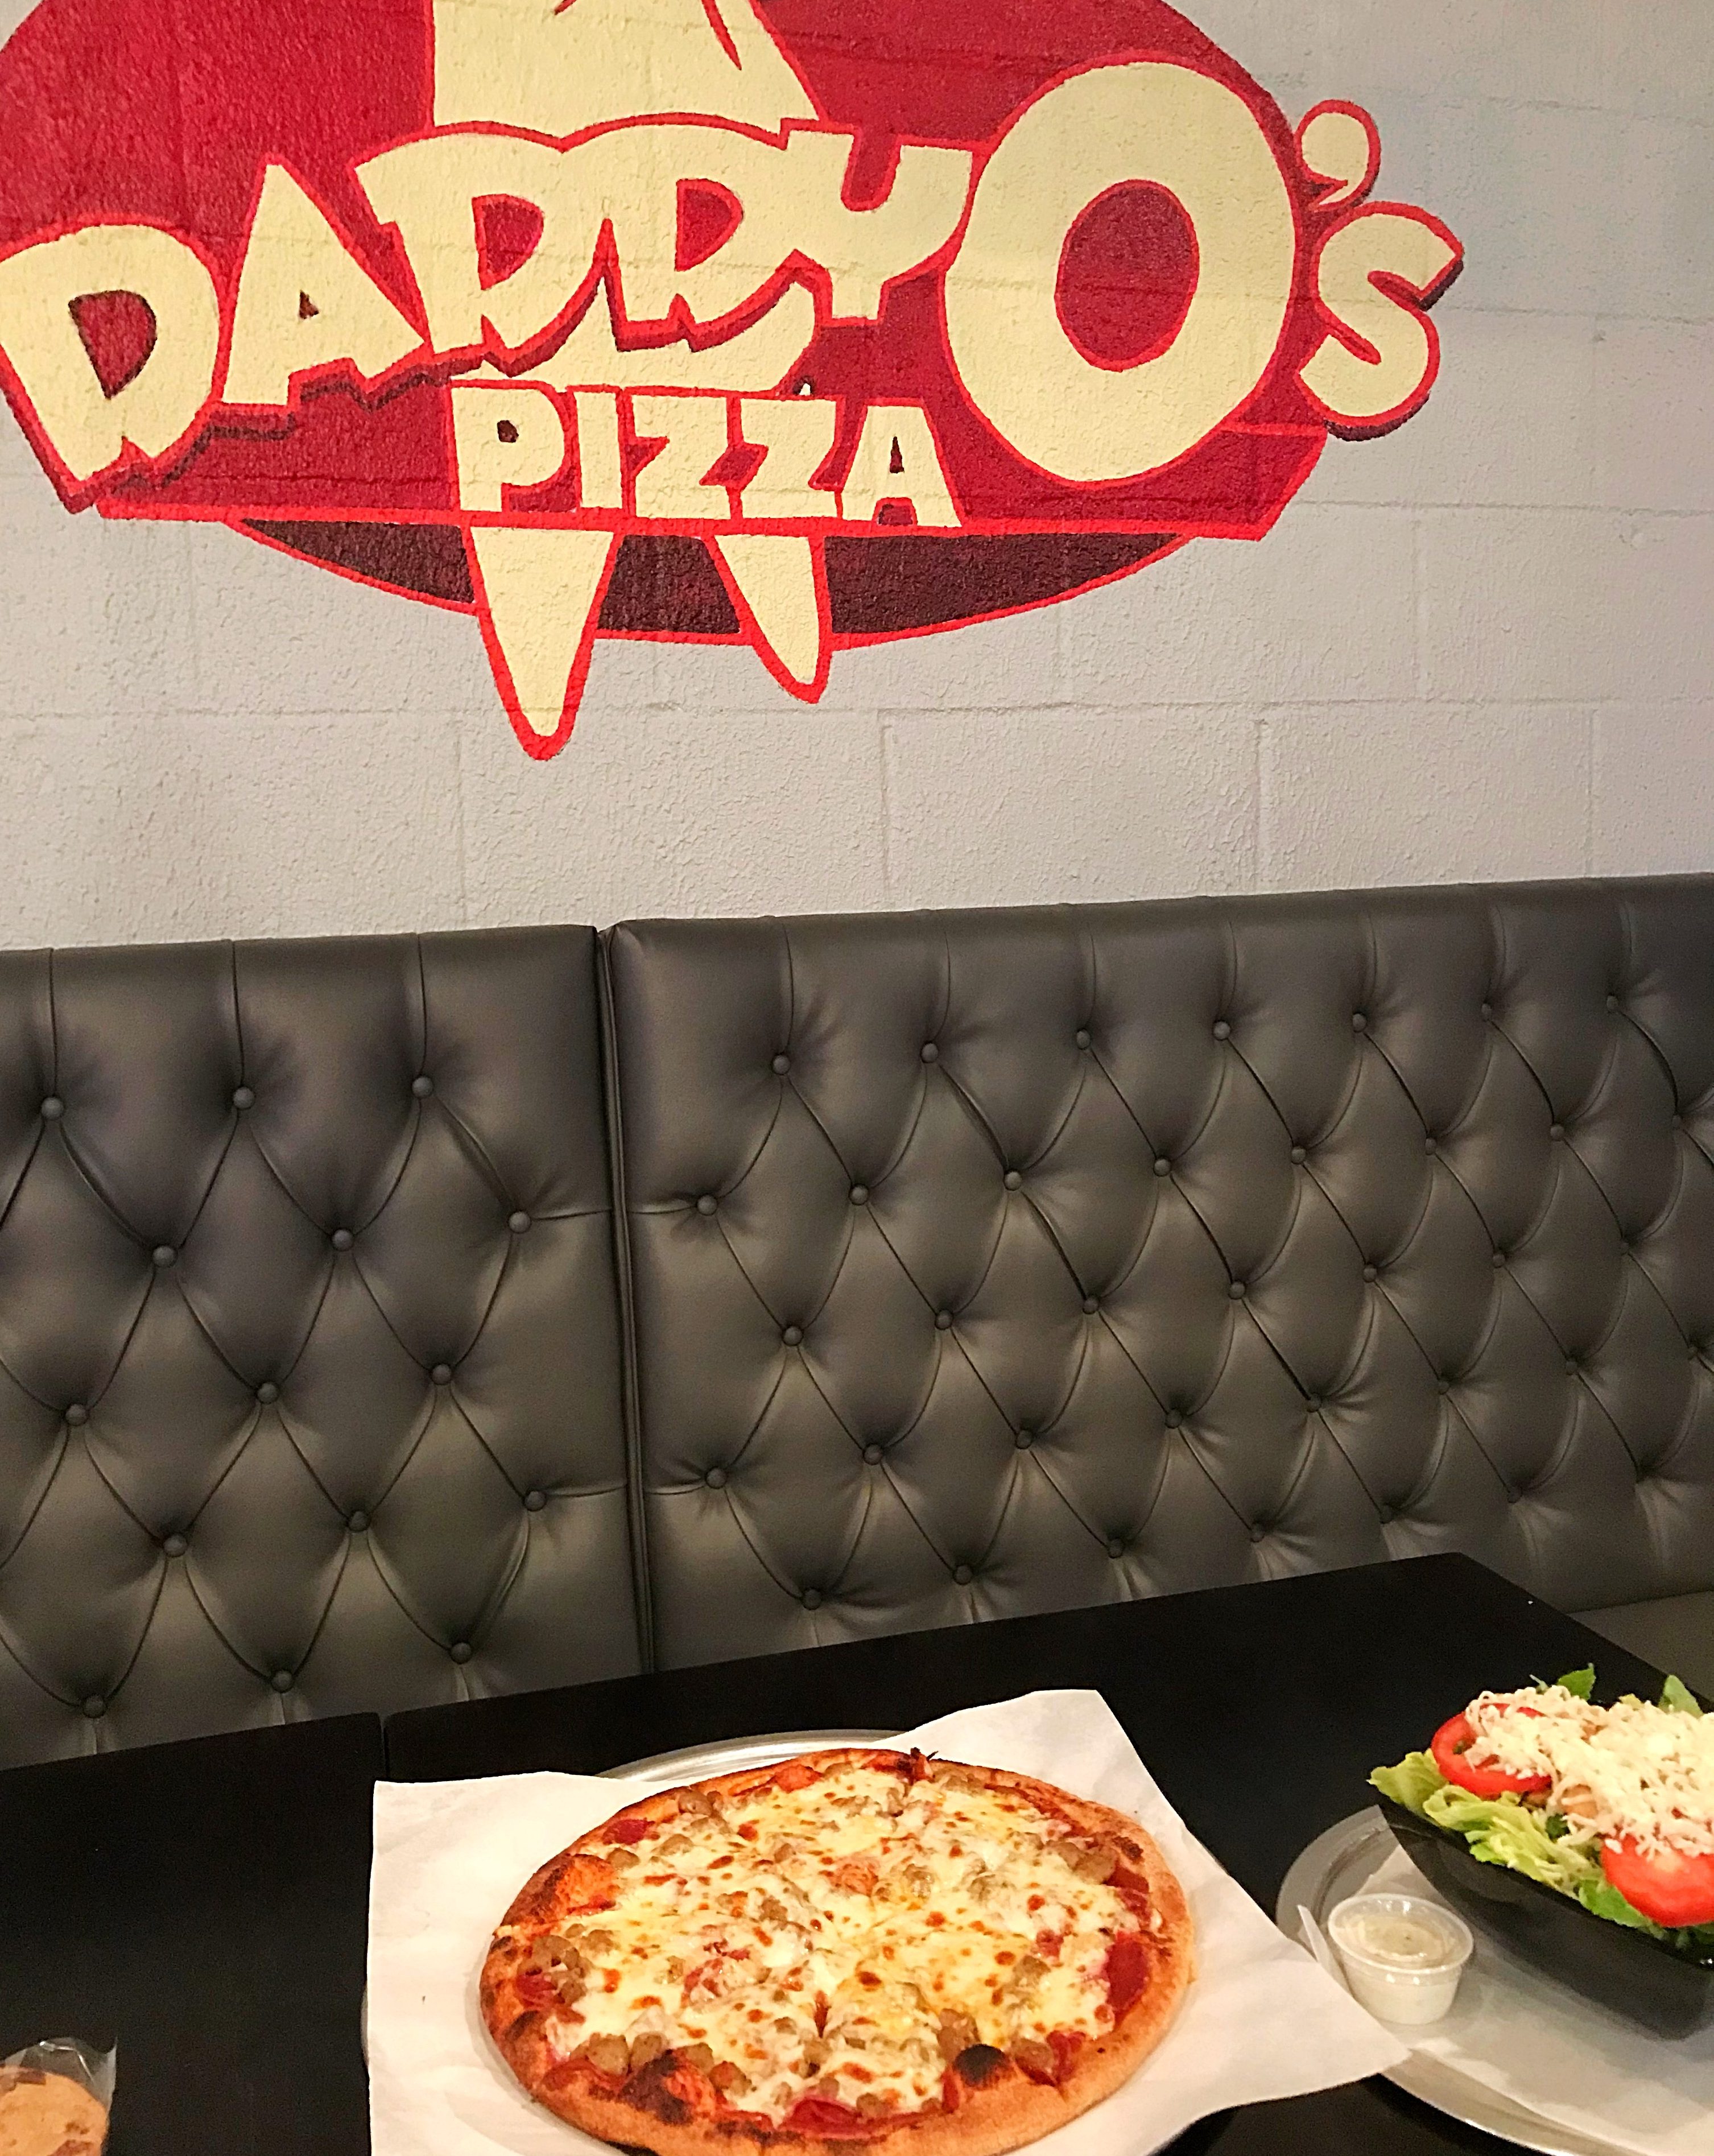 DaddyO’s Pizza Memorial